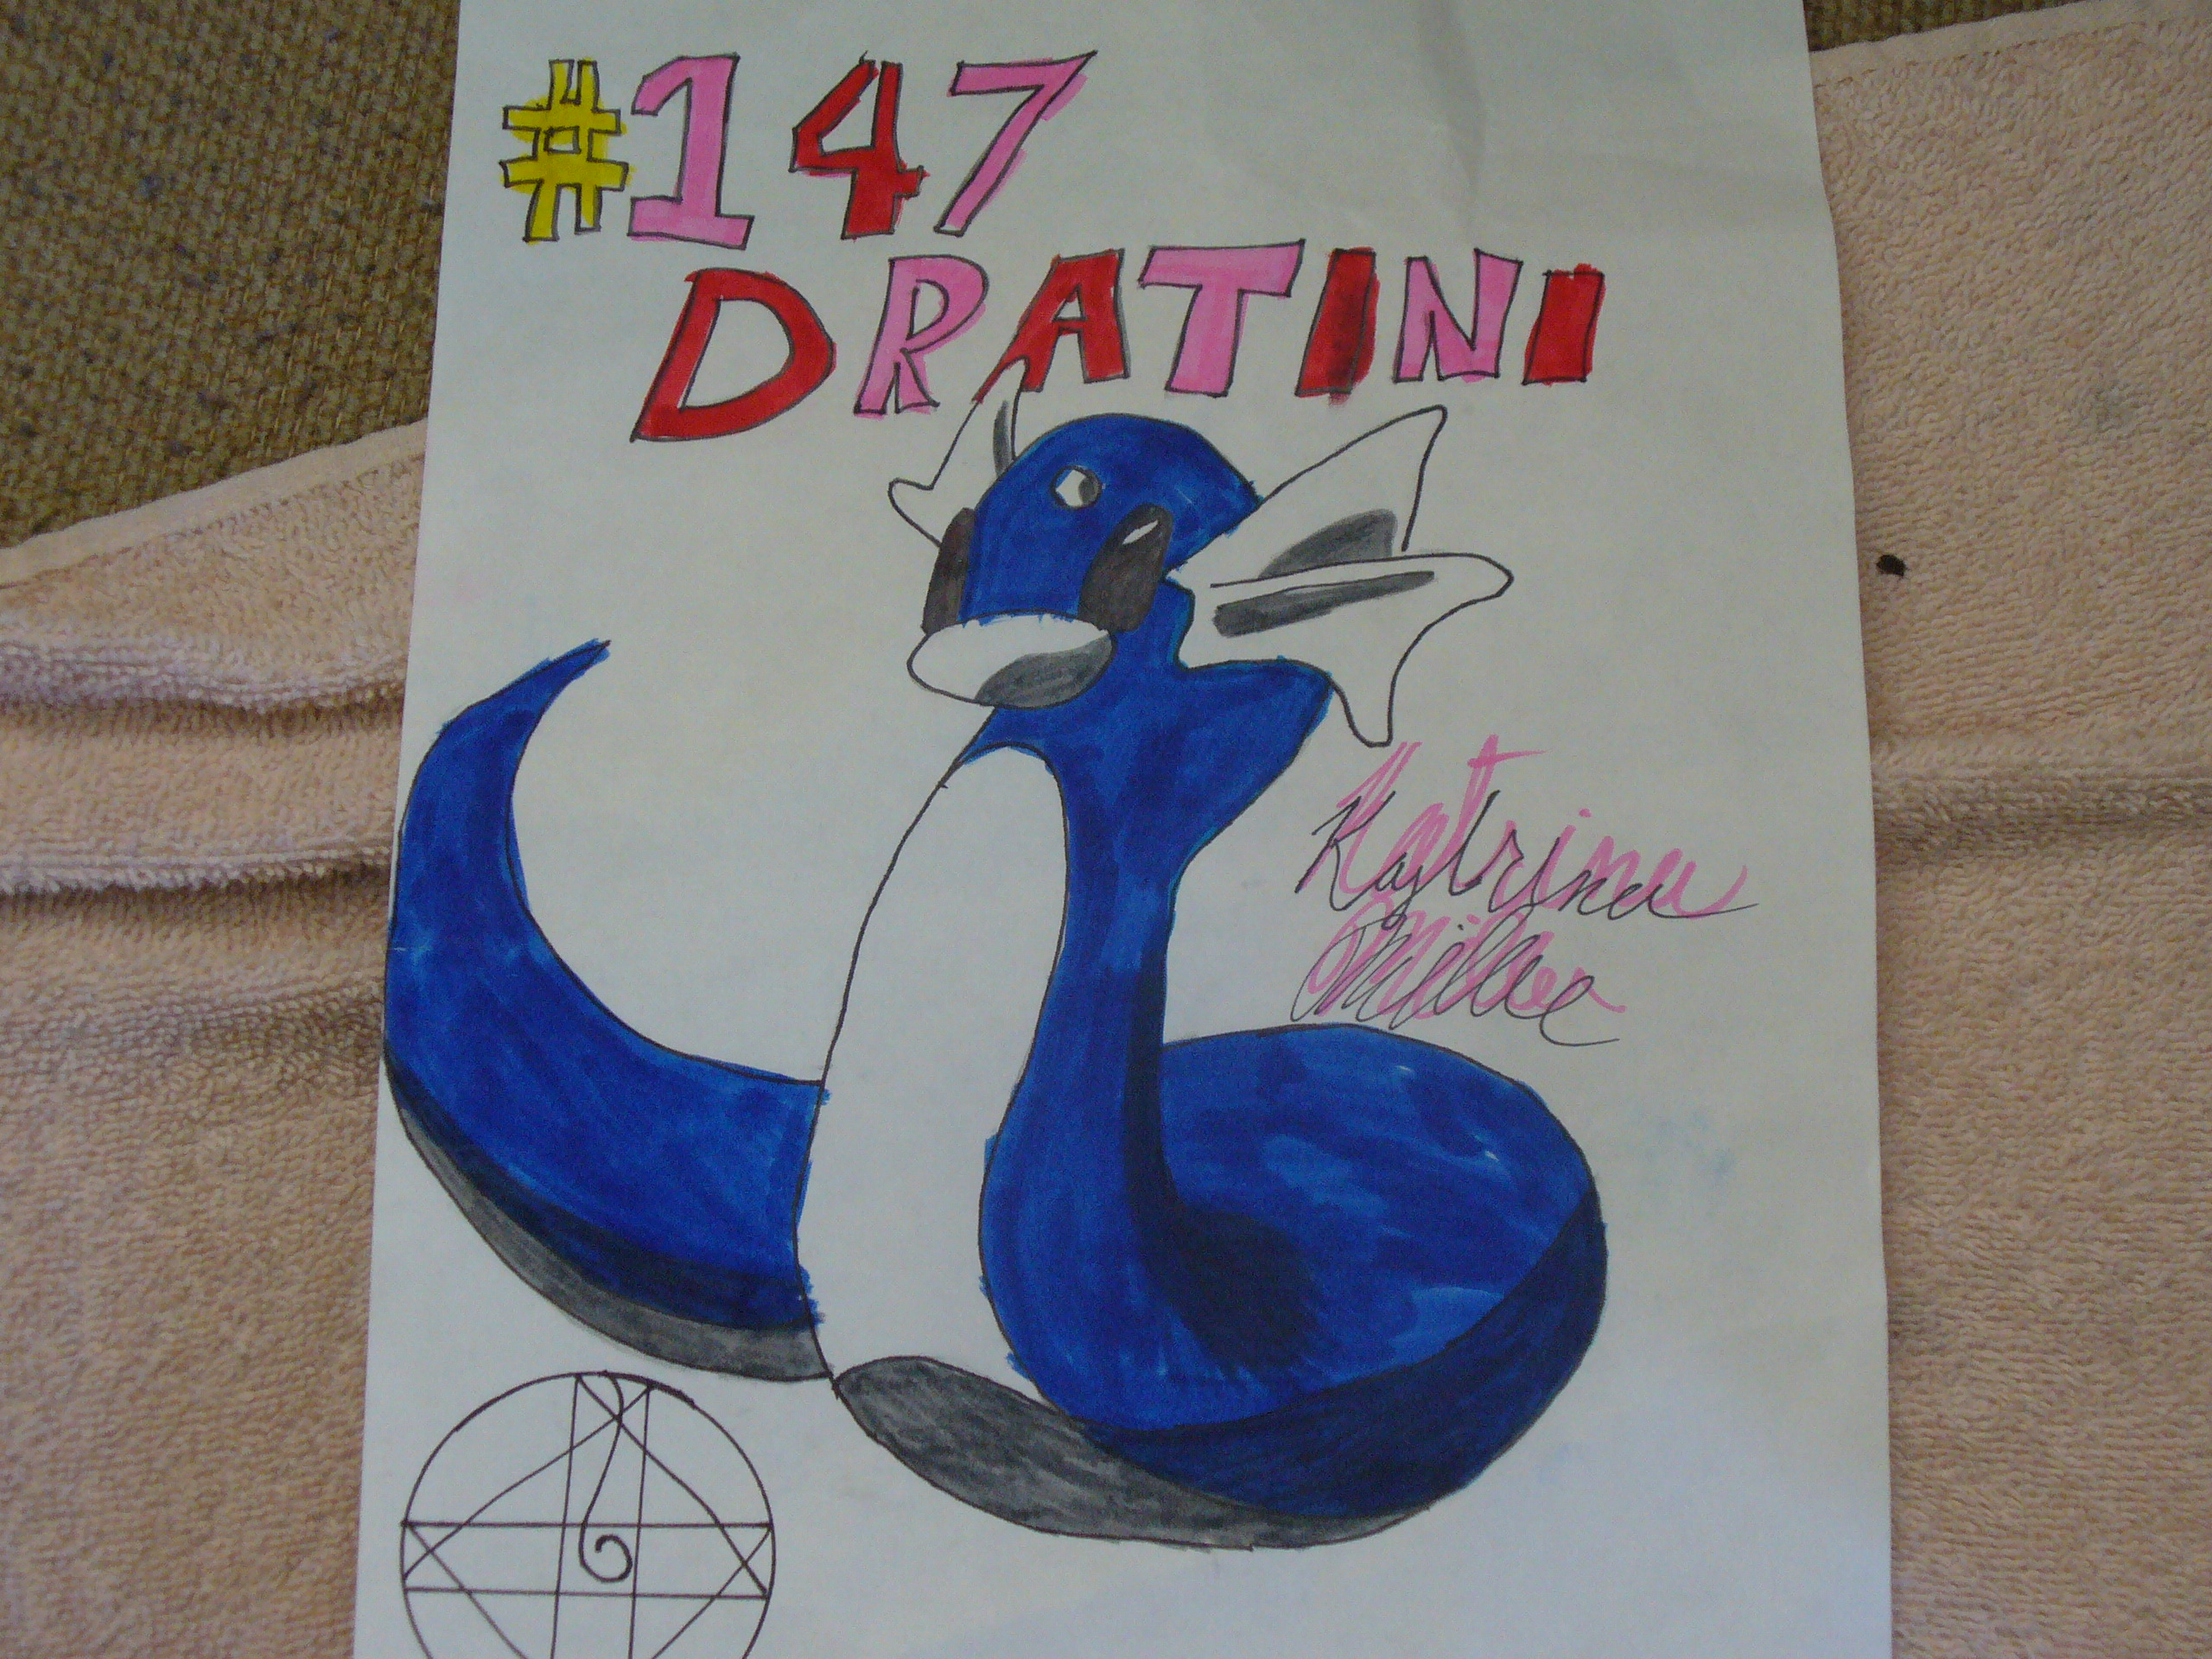 Dratini by Kilalasan